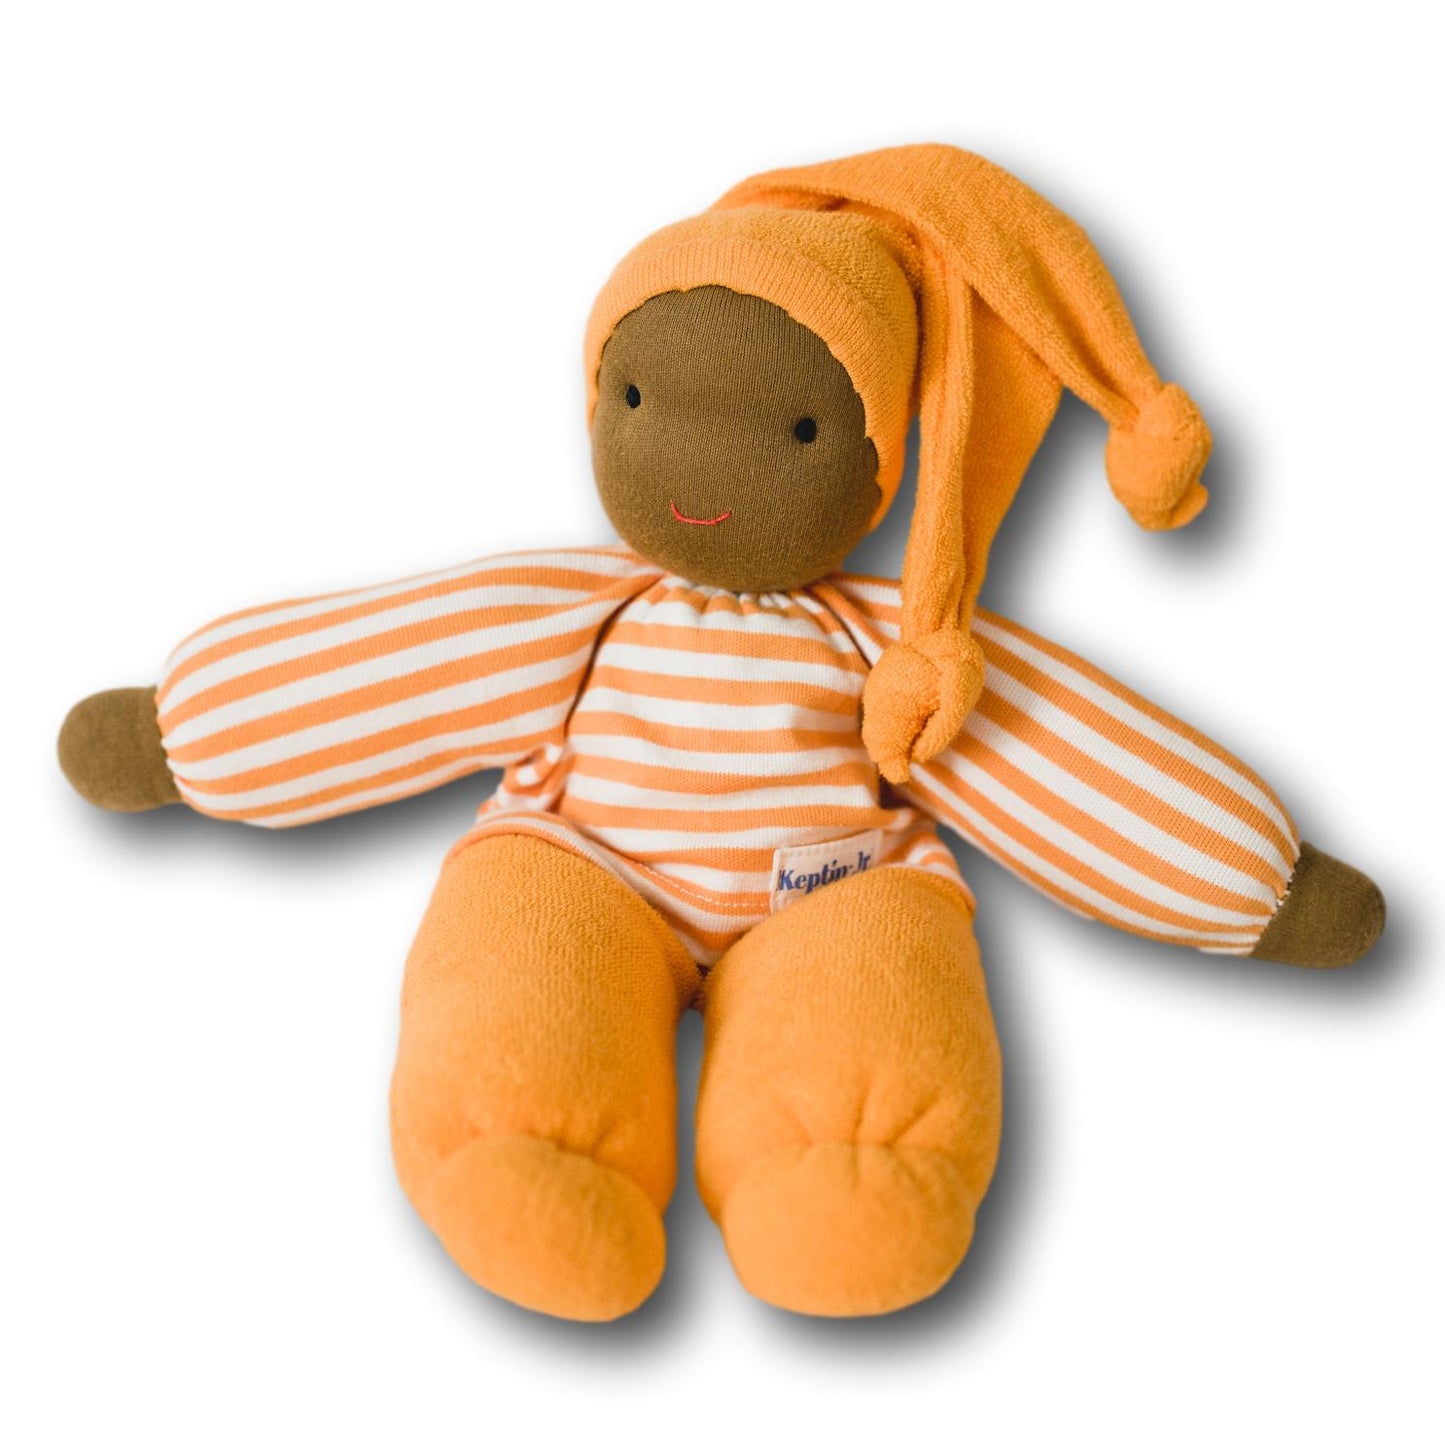 
                  
                    Keptin-Jr Keptin-Jr Organic Cotton Waldorf Tiny Doll, Orange - blueottertoys-KJ48.45.2
                  
                